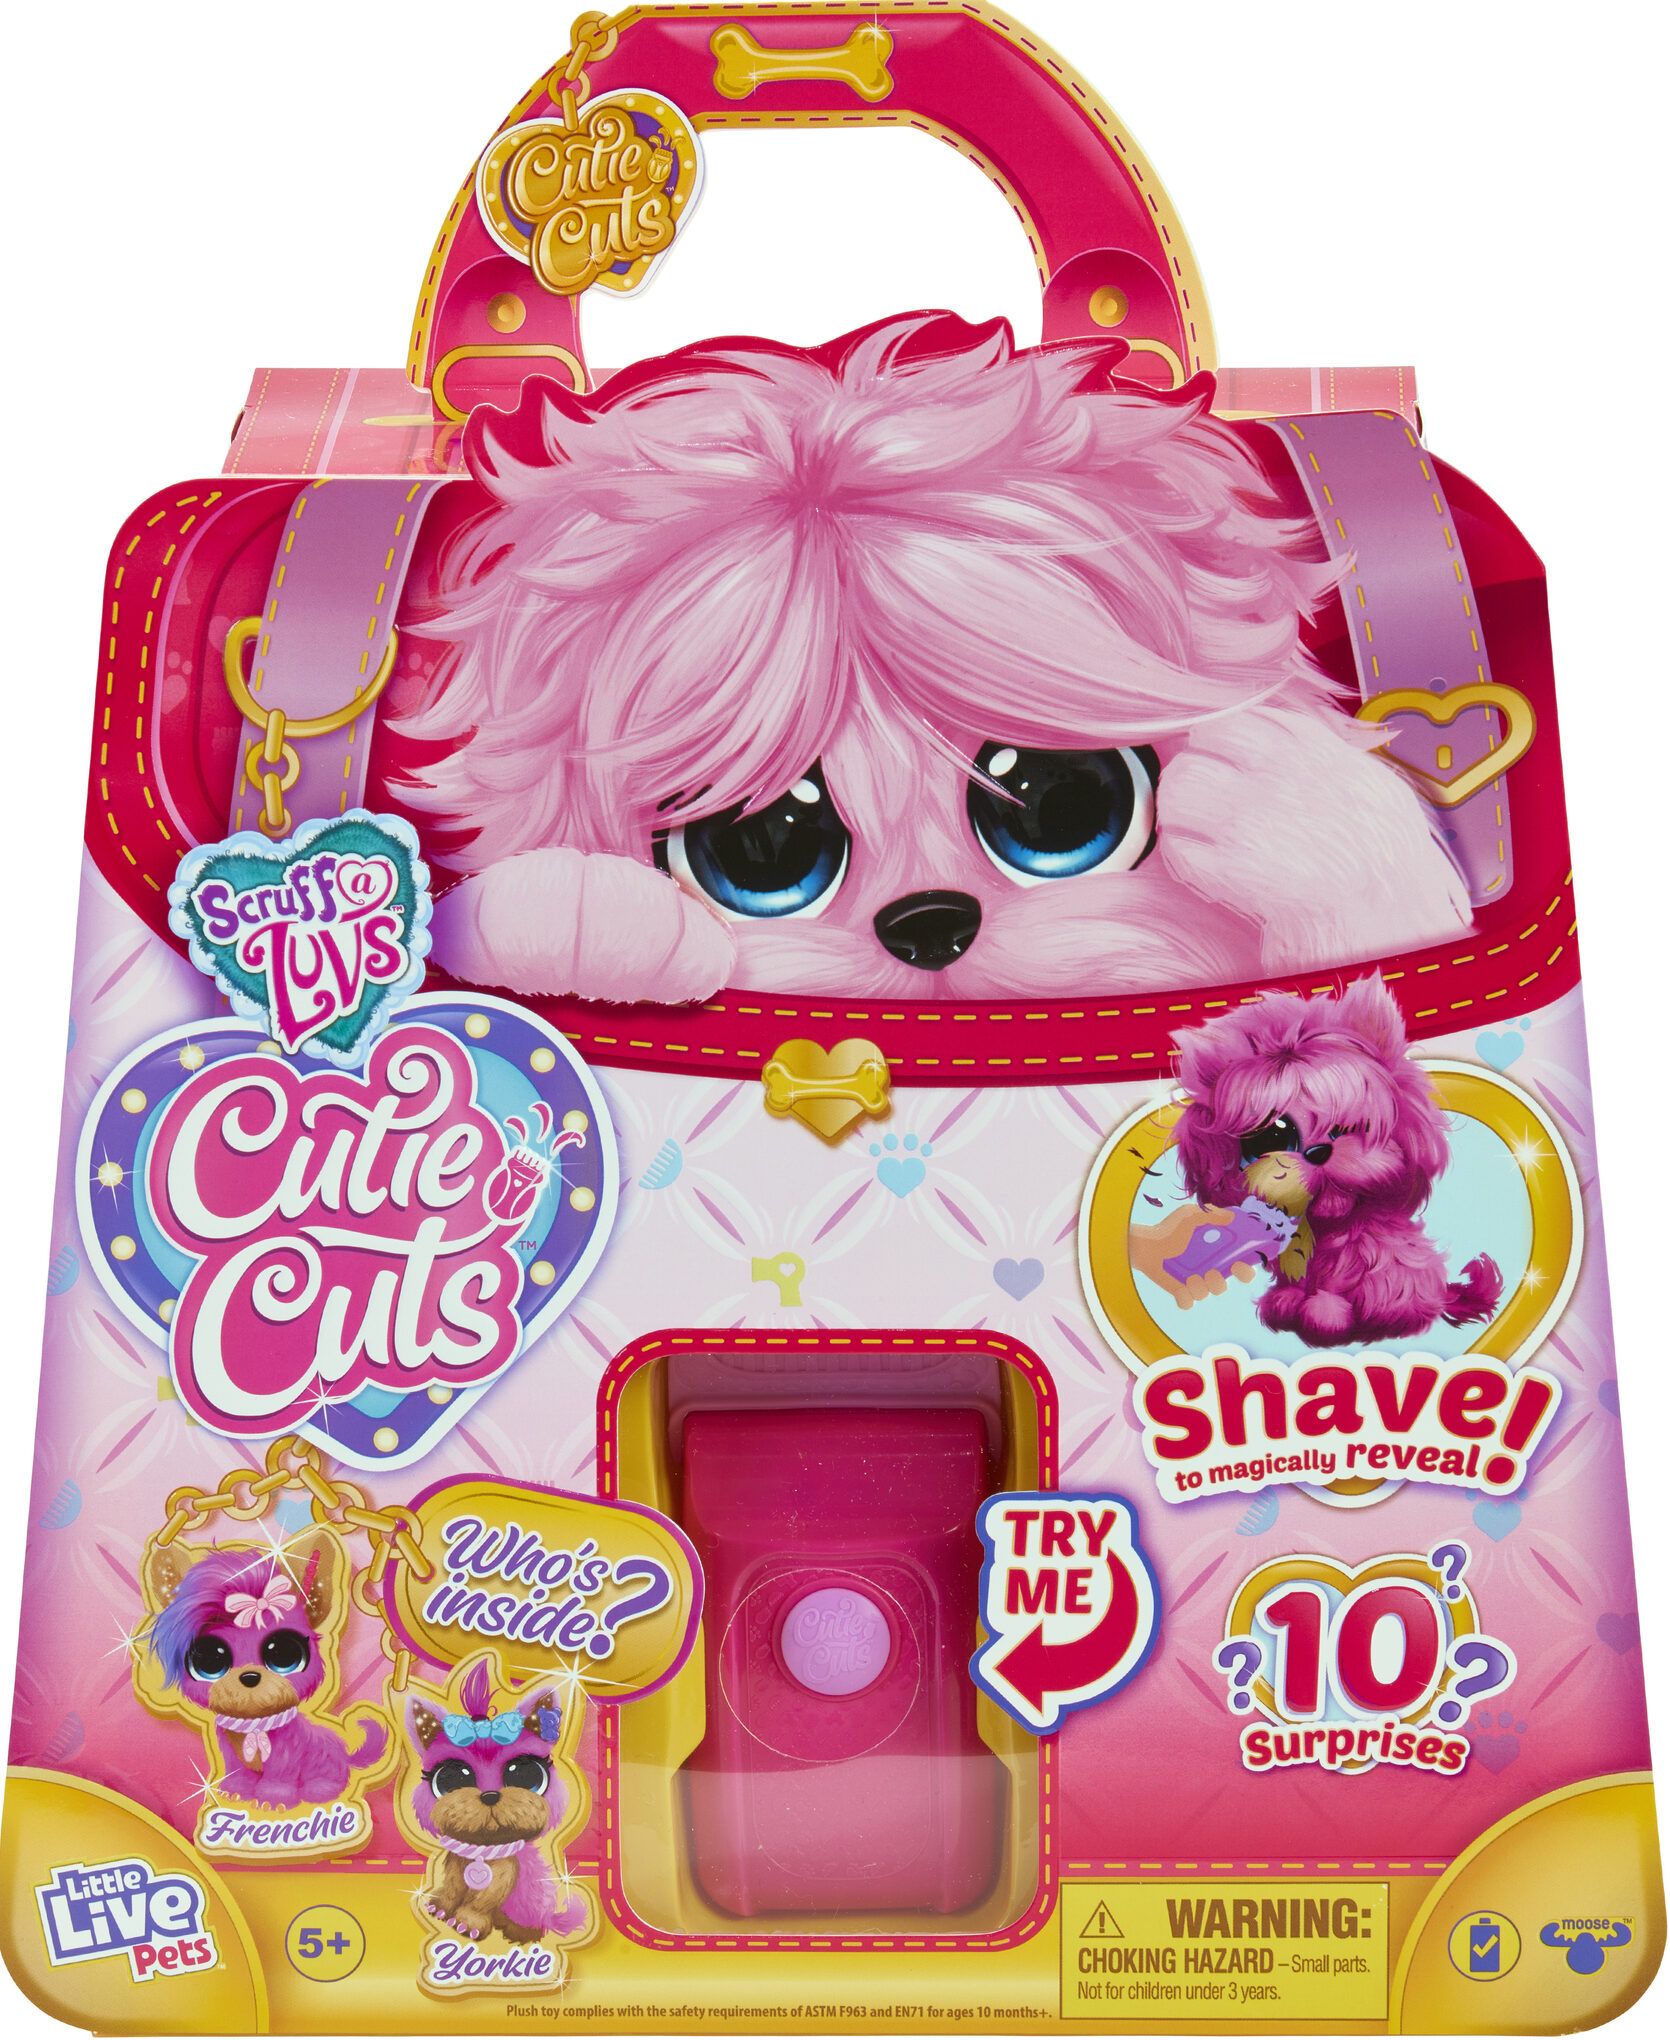 Scruff-A-Luvs-Cutie-Cuts-Series-1-Pink